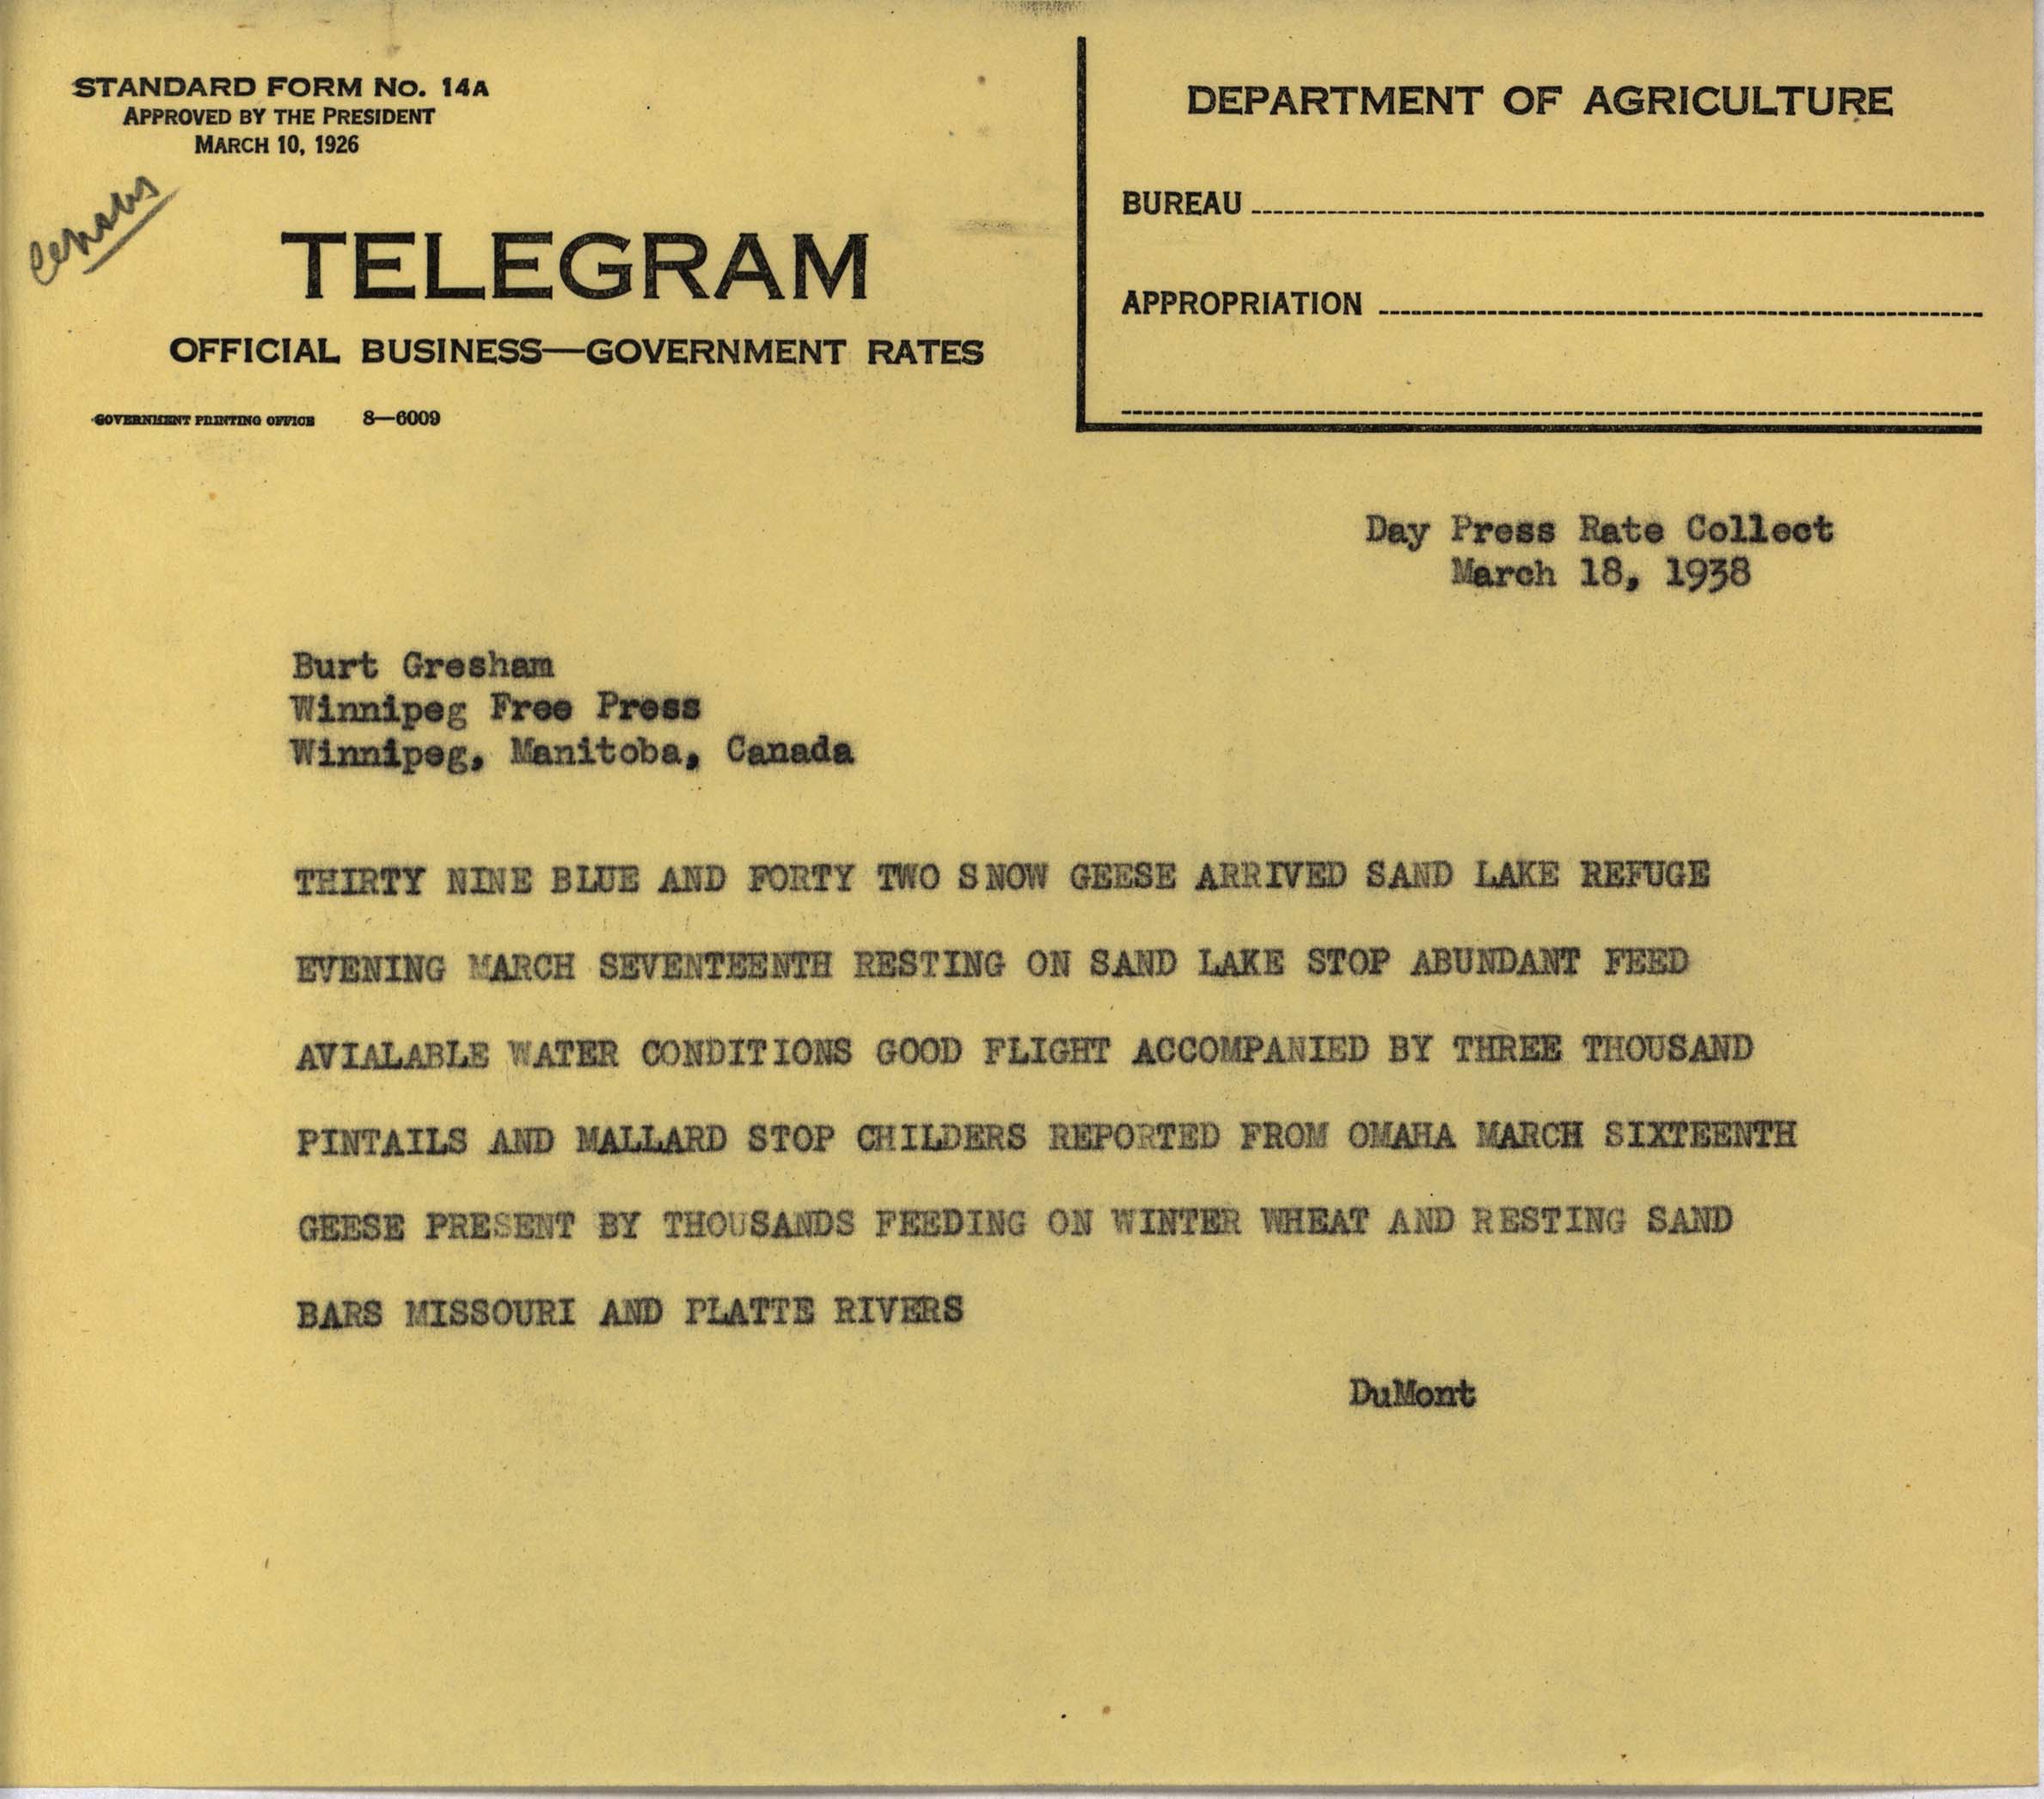 Philip DuMont telegram to Burt Gresham regarding Goose migration, March 18, 1938